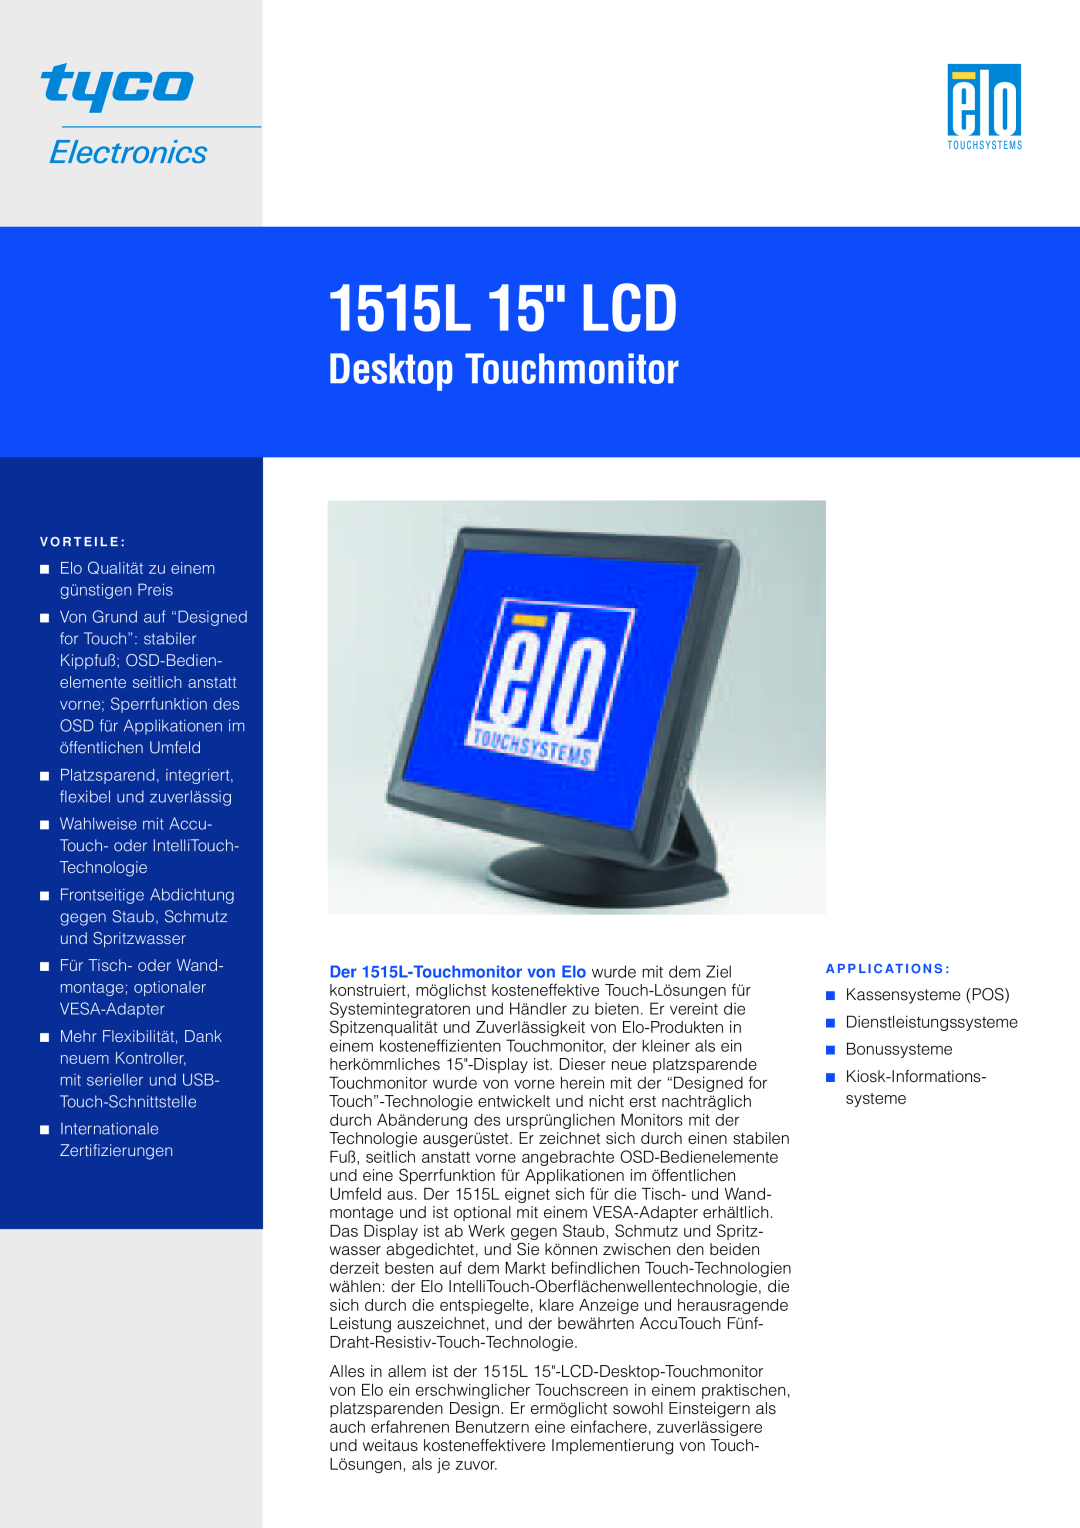 Elo TouchSystems manual 1515L 15 LCD, Desktop Touchmonitor, Elo Qualität zu einem günstigen Preis 